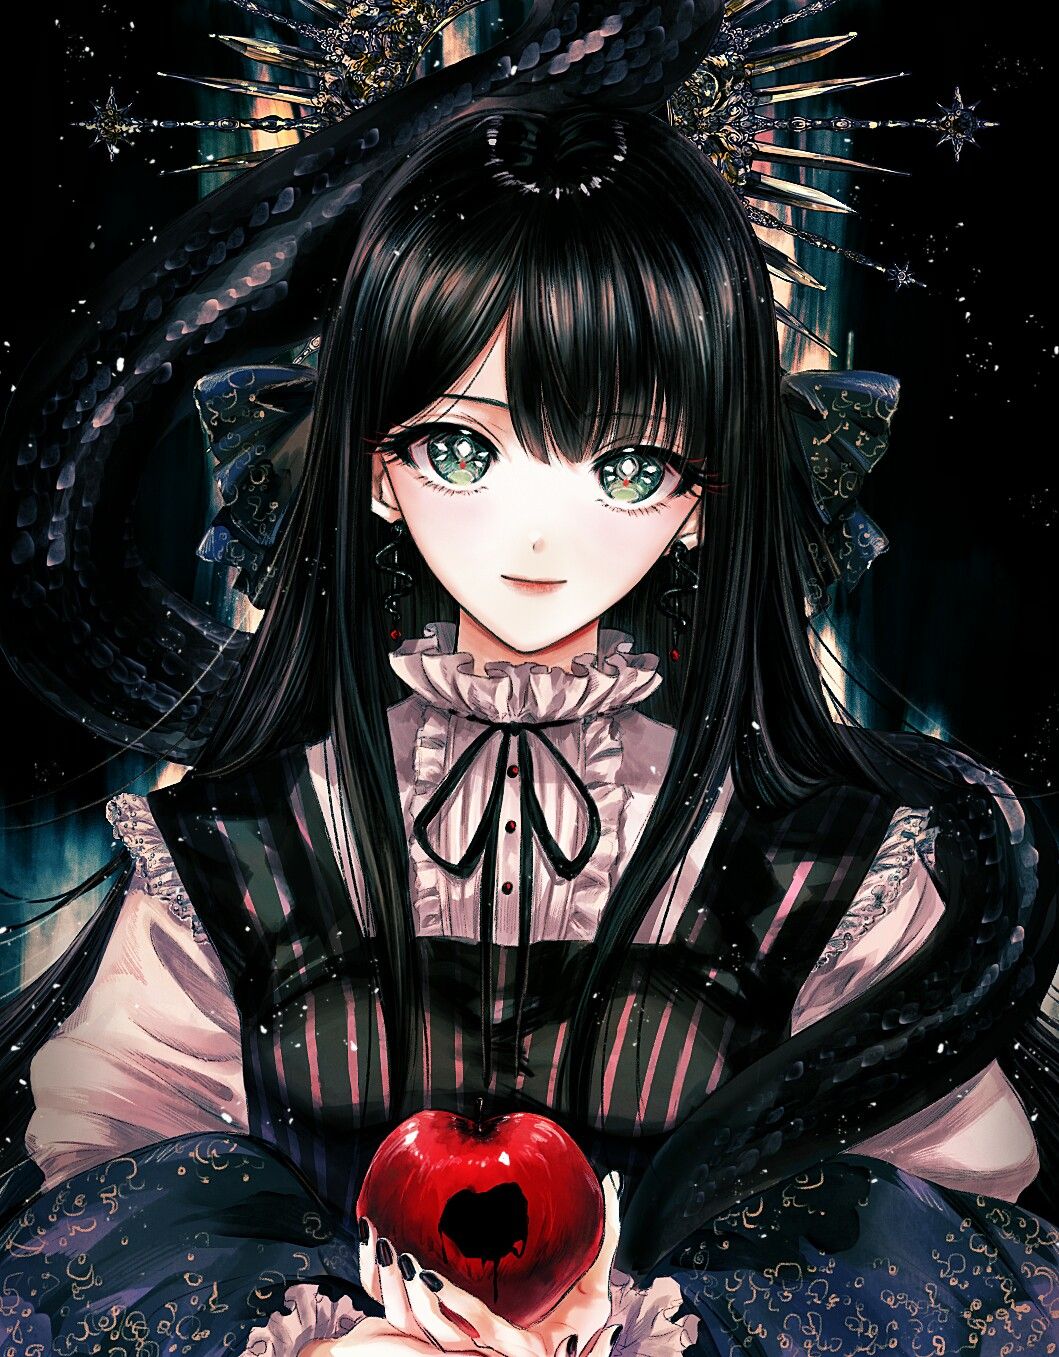 Nữ nhân vật với mái tóc đen dài đẹp mê hồn trong anime, khiến bạn không thể rời mắt khỏi bức tranh này. Hãy xem và đắm chìm vào thế giới của cô nàng với mái tóc đen đầy cuốn hút!